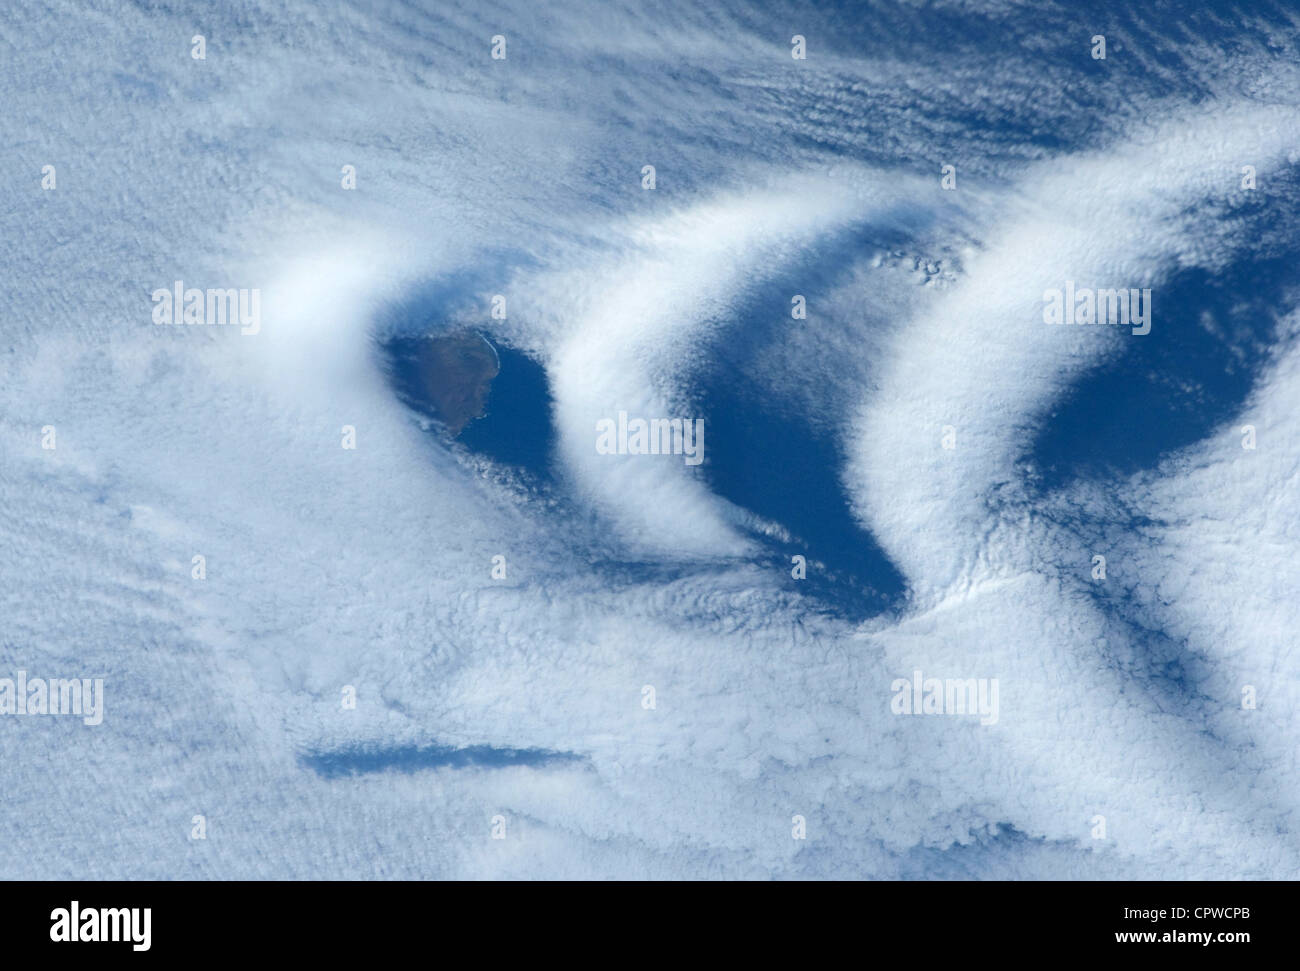 Die Wolkenbildung Welle im Gefolge oder in Windrichtung Seite der Île Aux Cochons, "Pig Island" im südlichen Indischen Ozean. Stockfoto